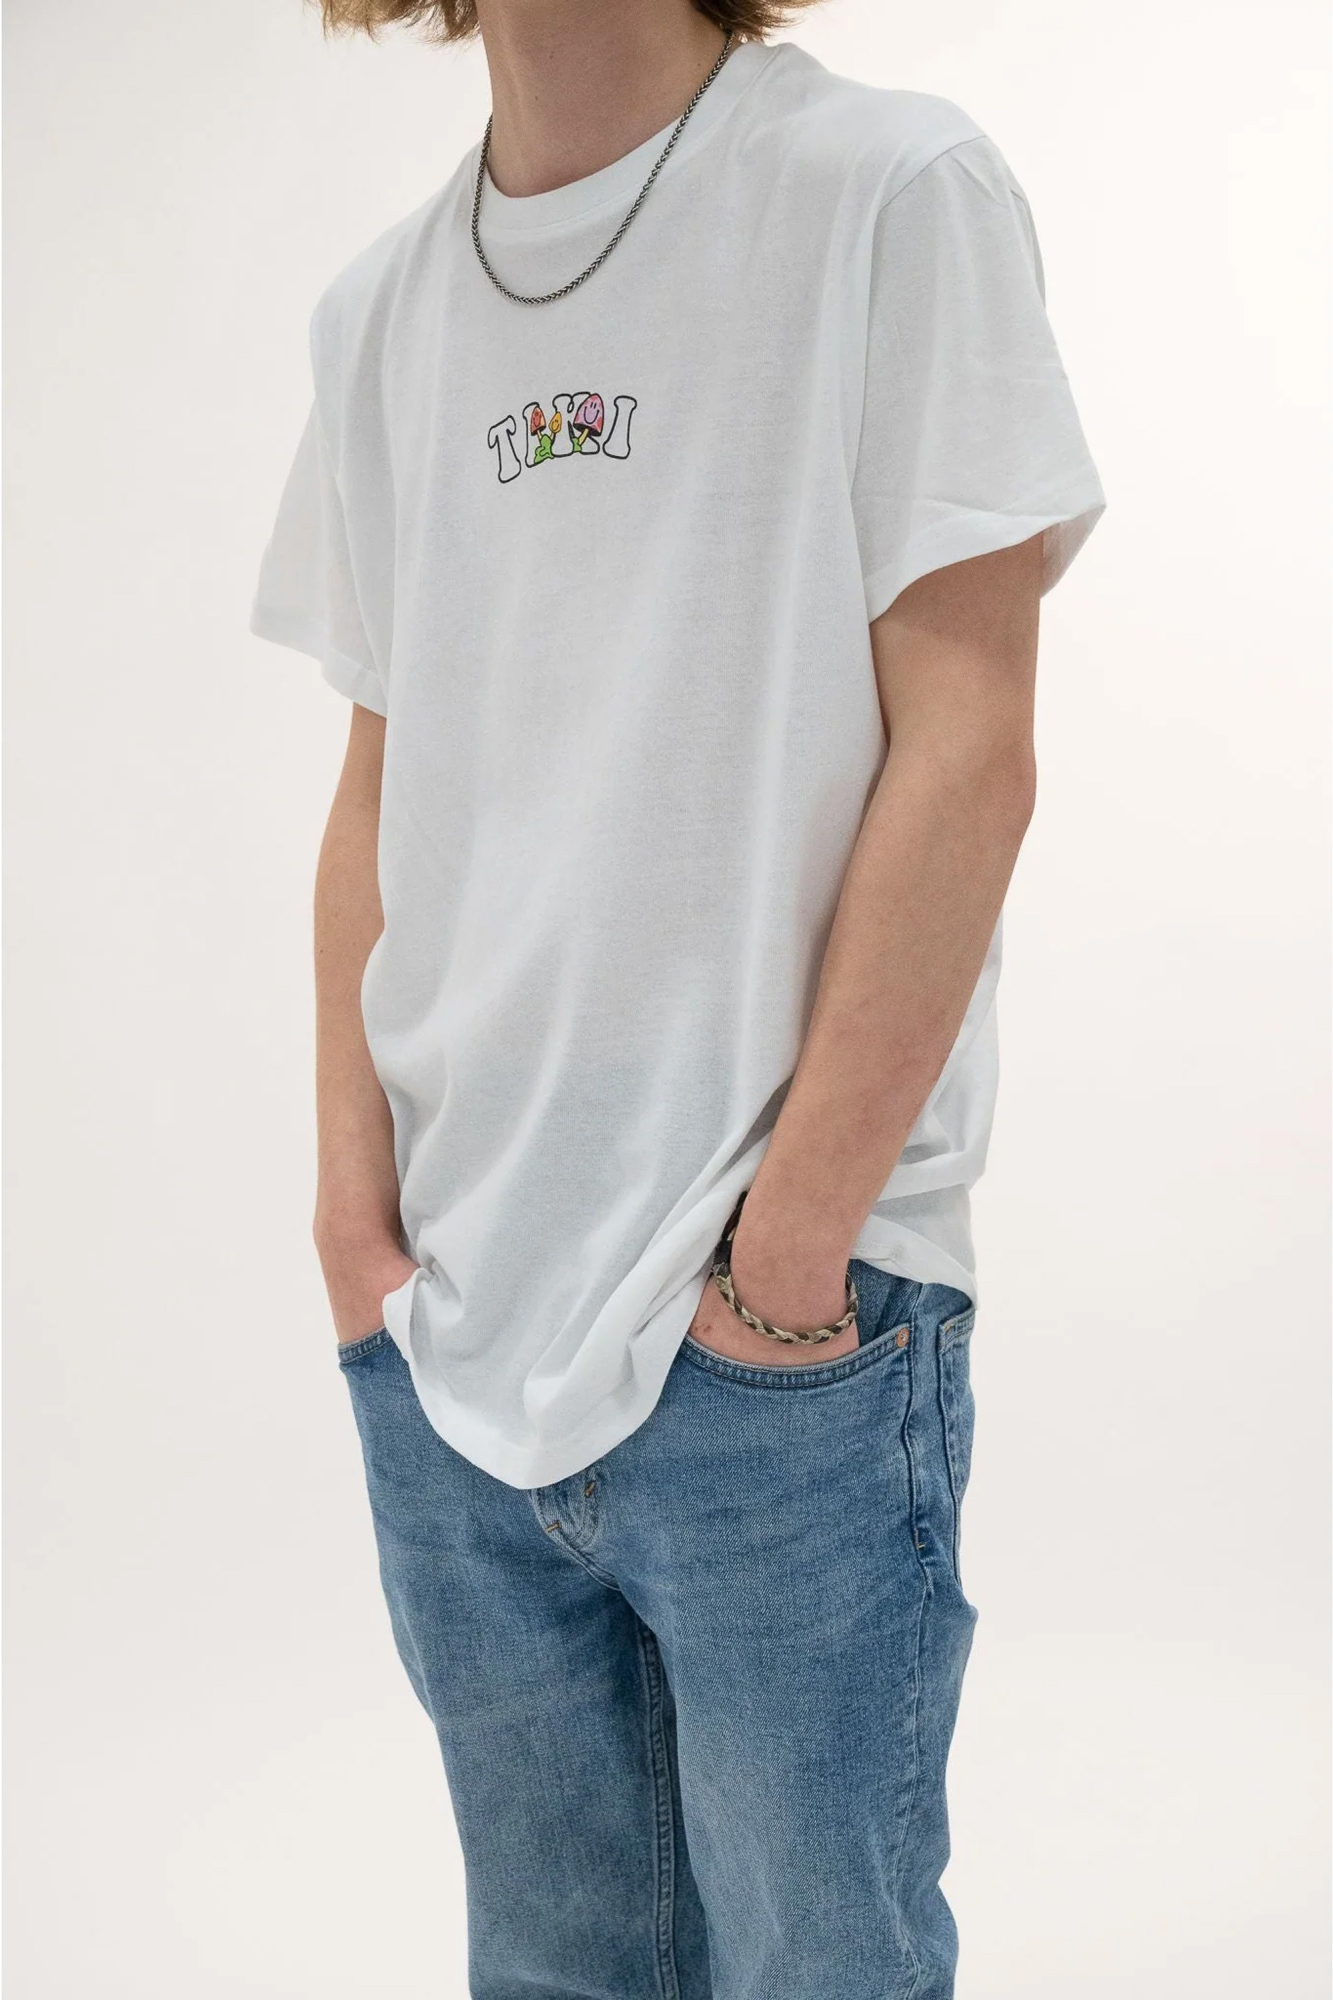 Tiki Unisex Party Wave Short Sleeve T-shirt White - Size: XL